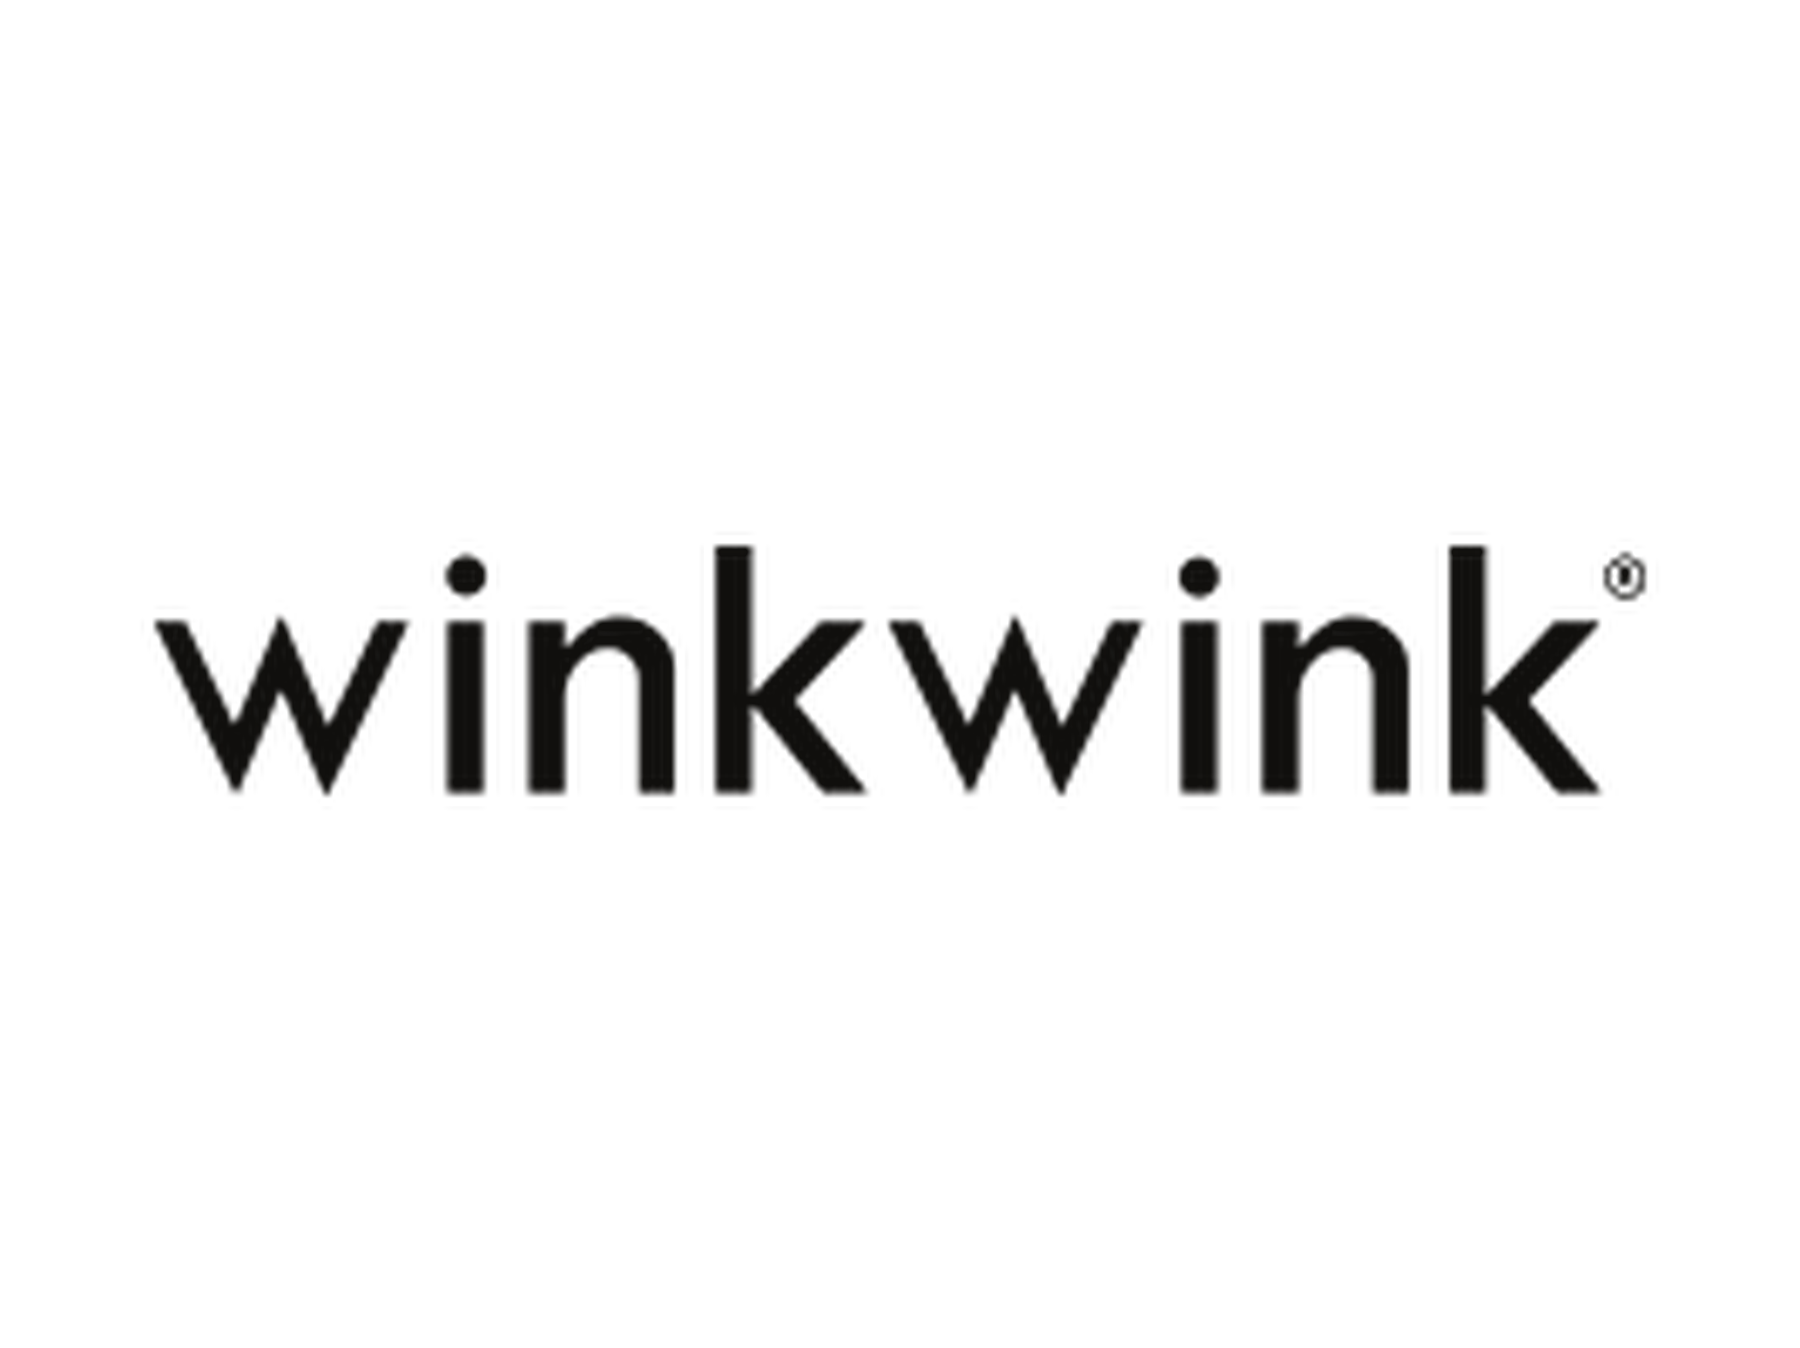 Winkwink